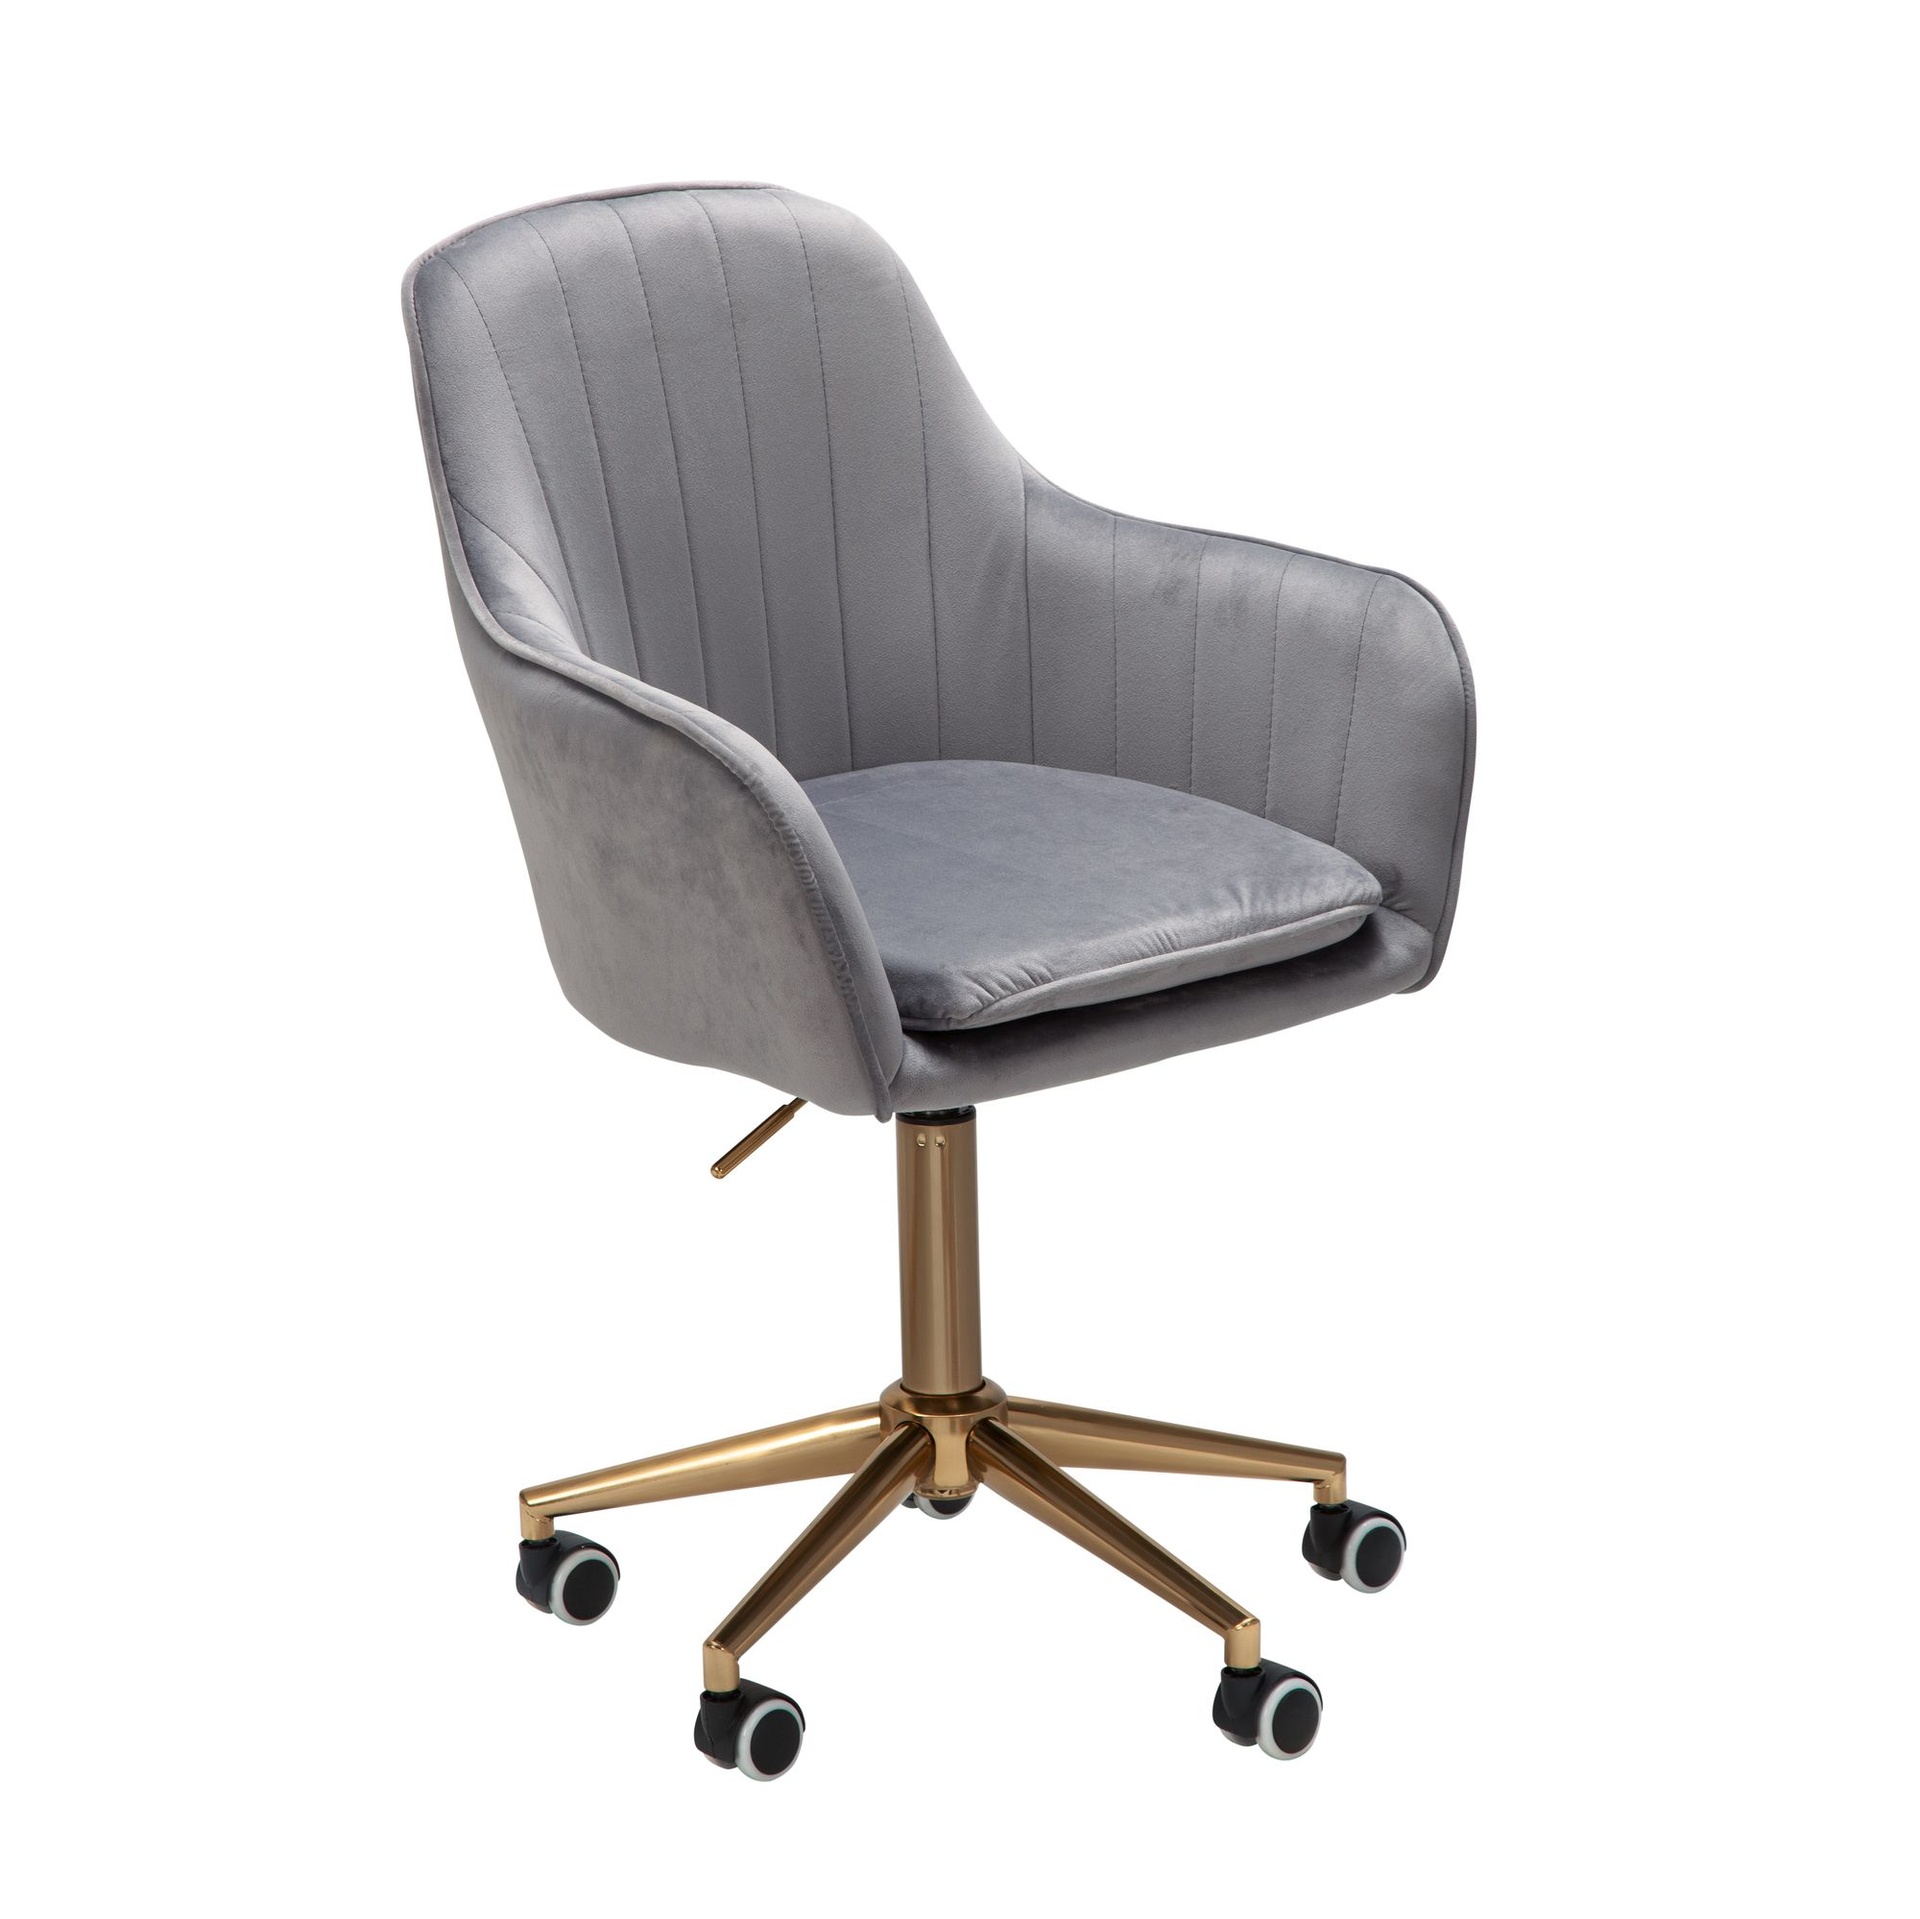 [A09499] Chaise de bureau velours gris, avec dossier, jusqu'à 120 kg, réglable en hauteur, avec roulettes, pivotante